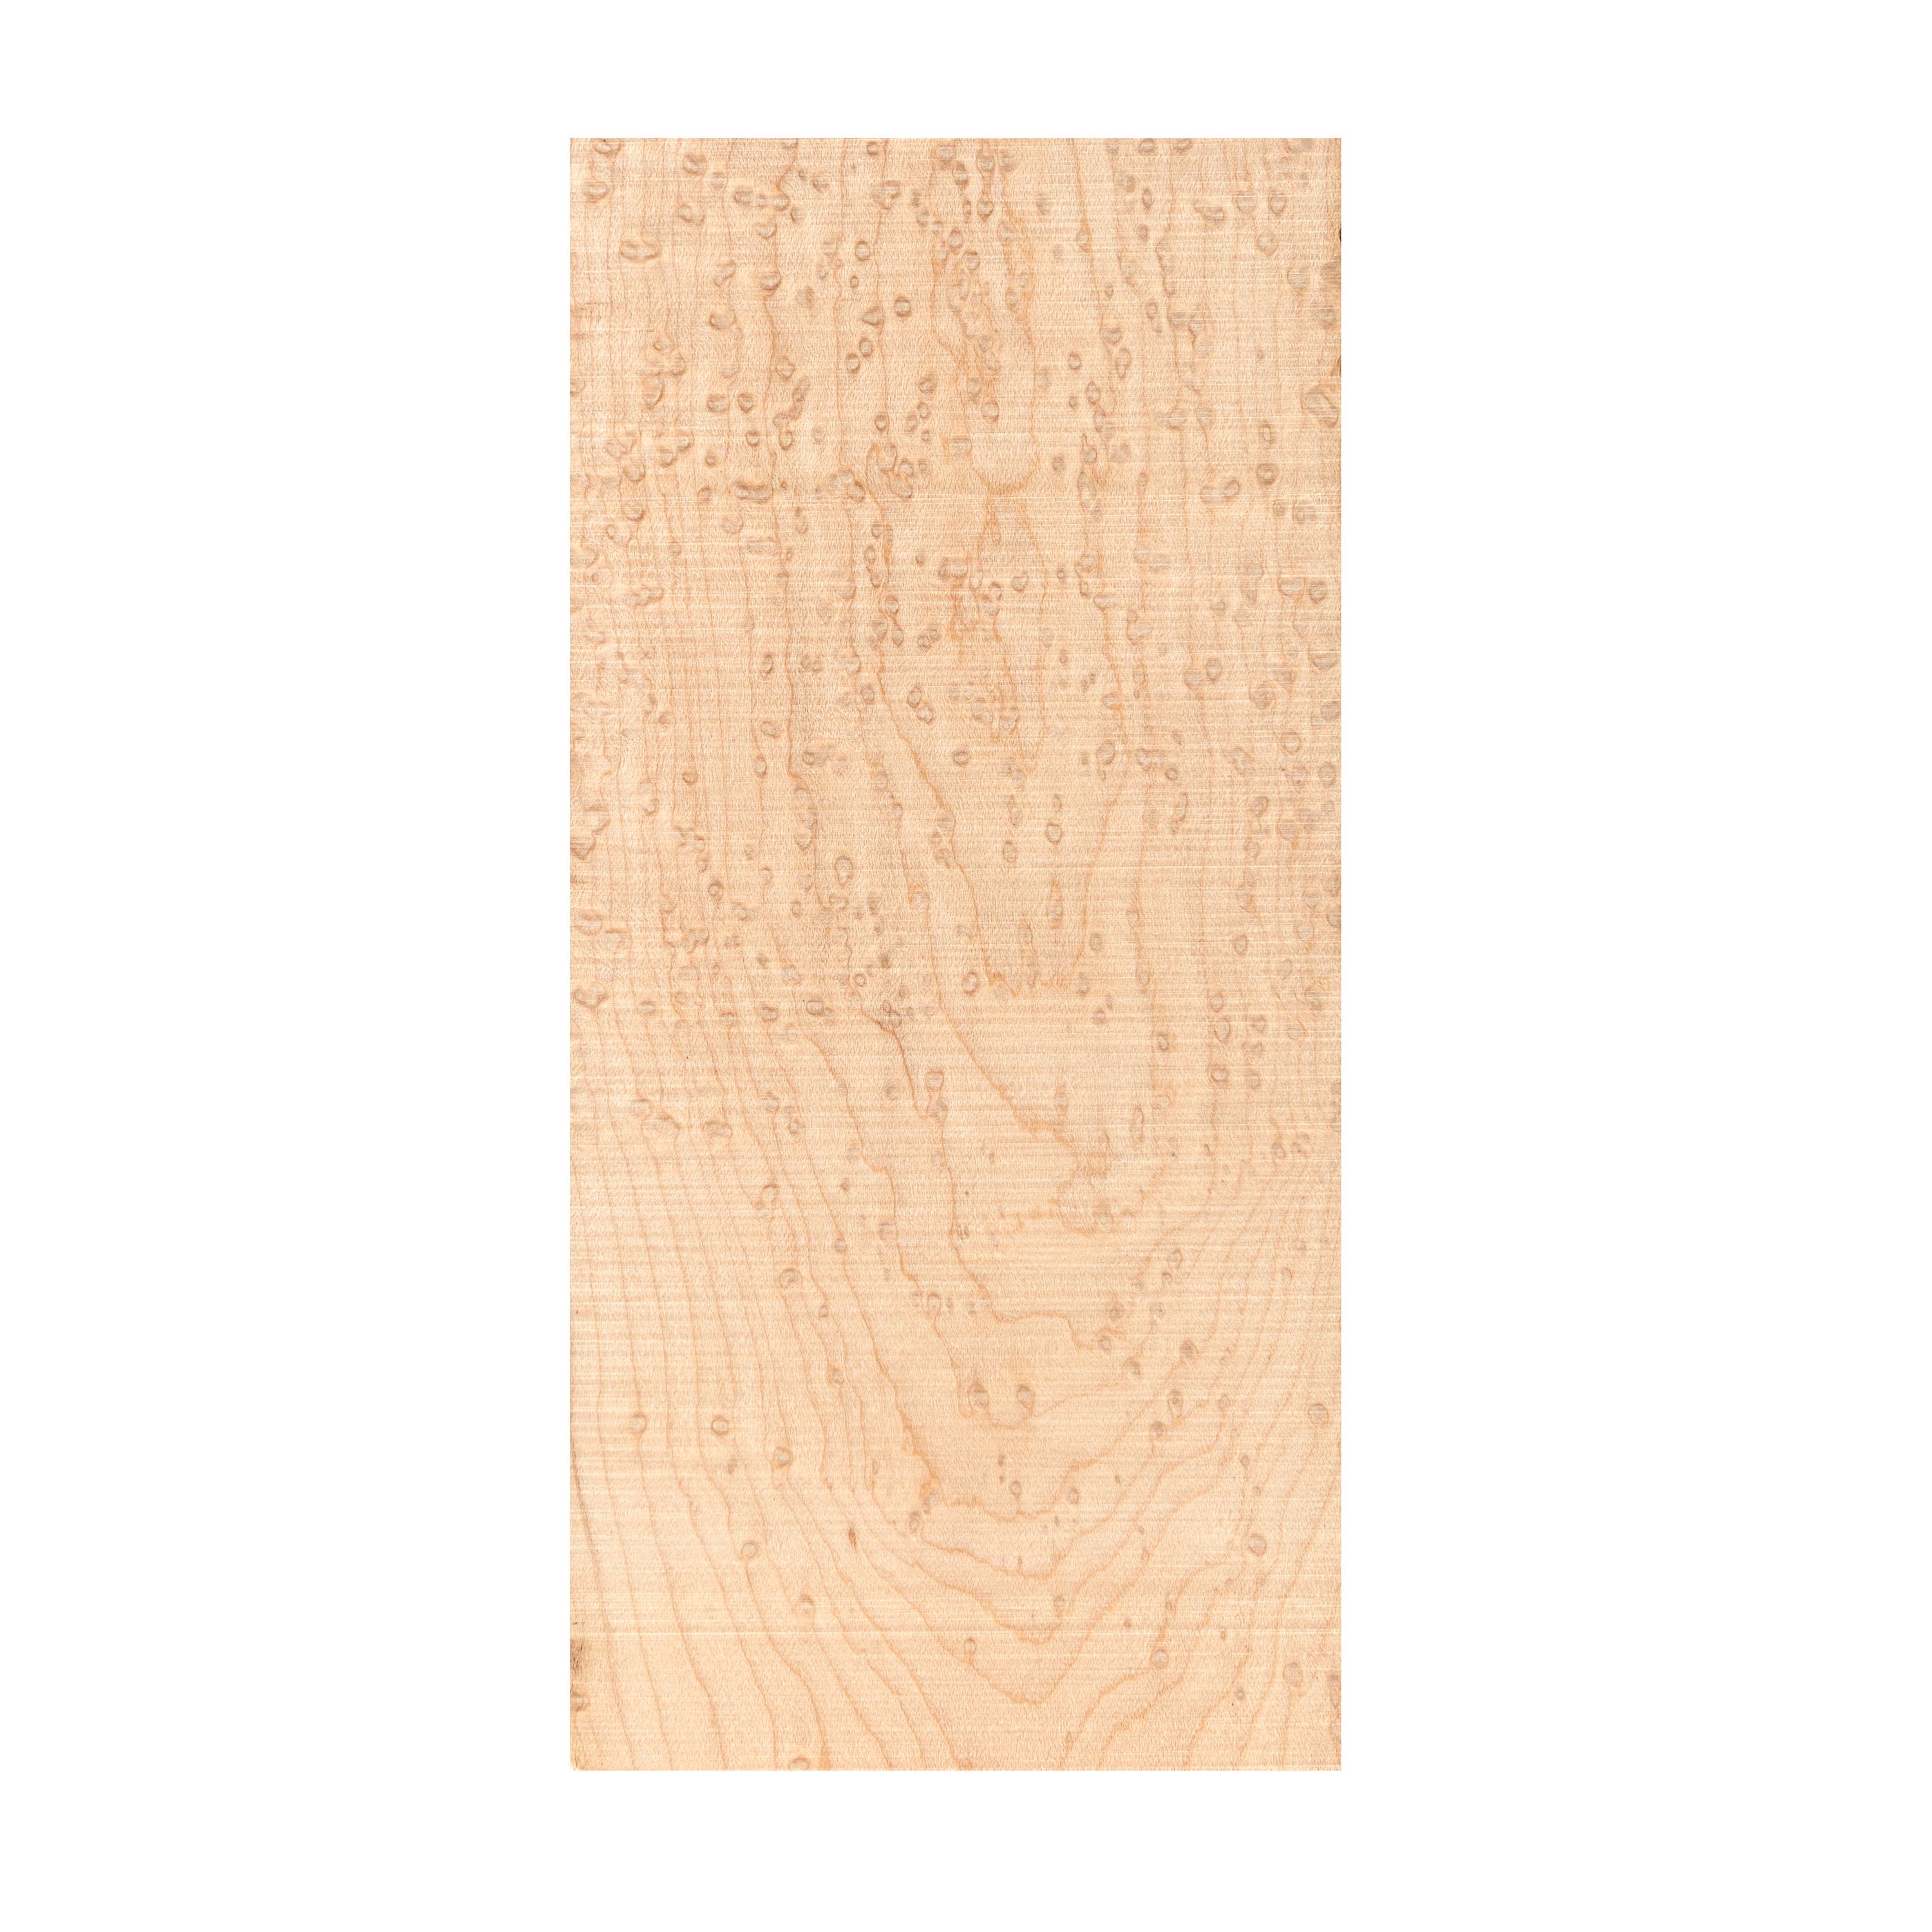 Sawmill Specials - Peghead Overlay Veneer, AAA Birdseye Maple, Unsanded